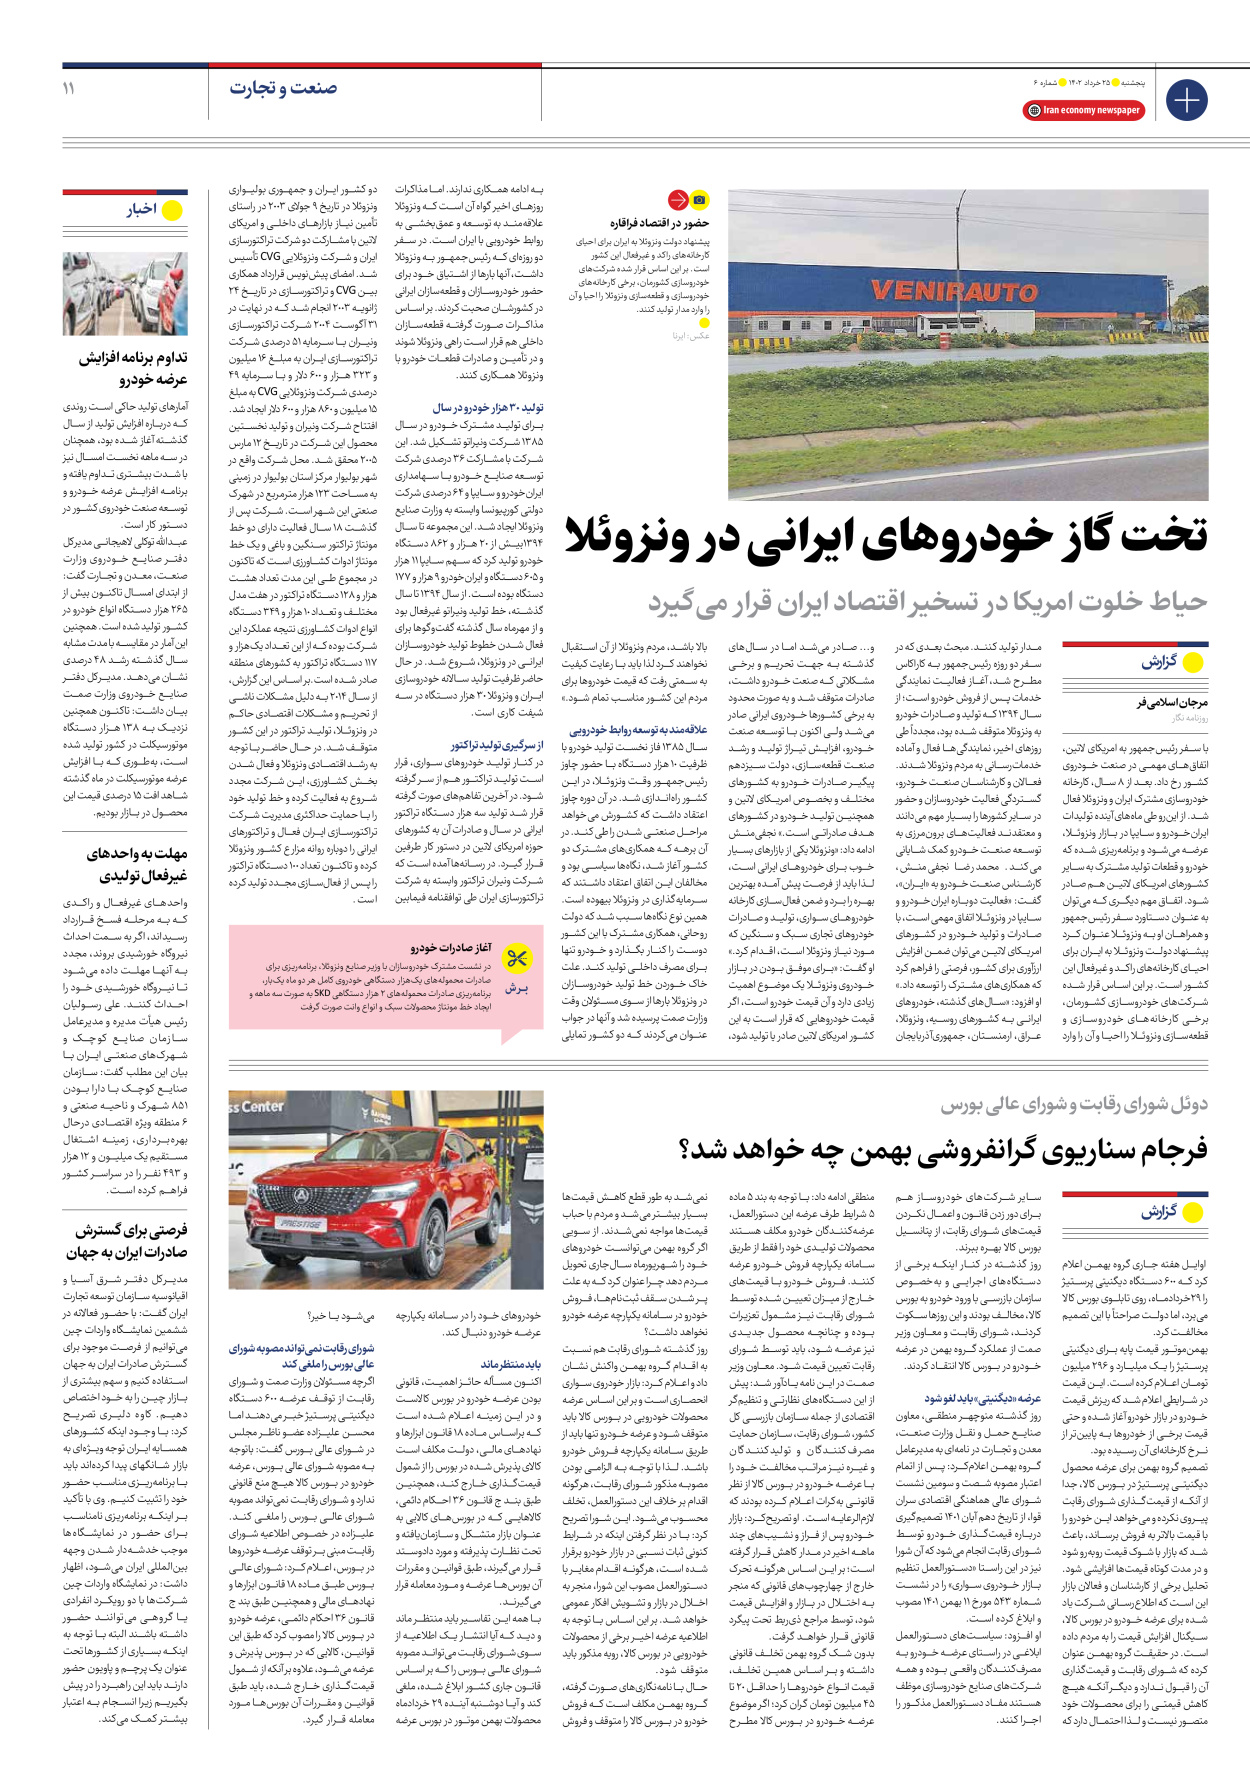 روزنامه ایران اقتصادی - شماره شش - ۲۵ خرداد ۱۴۰۲ - صفحه ۱۱